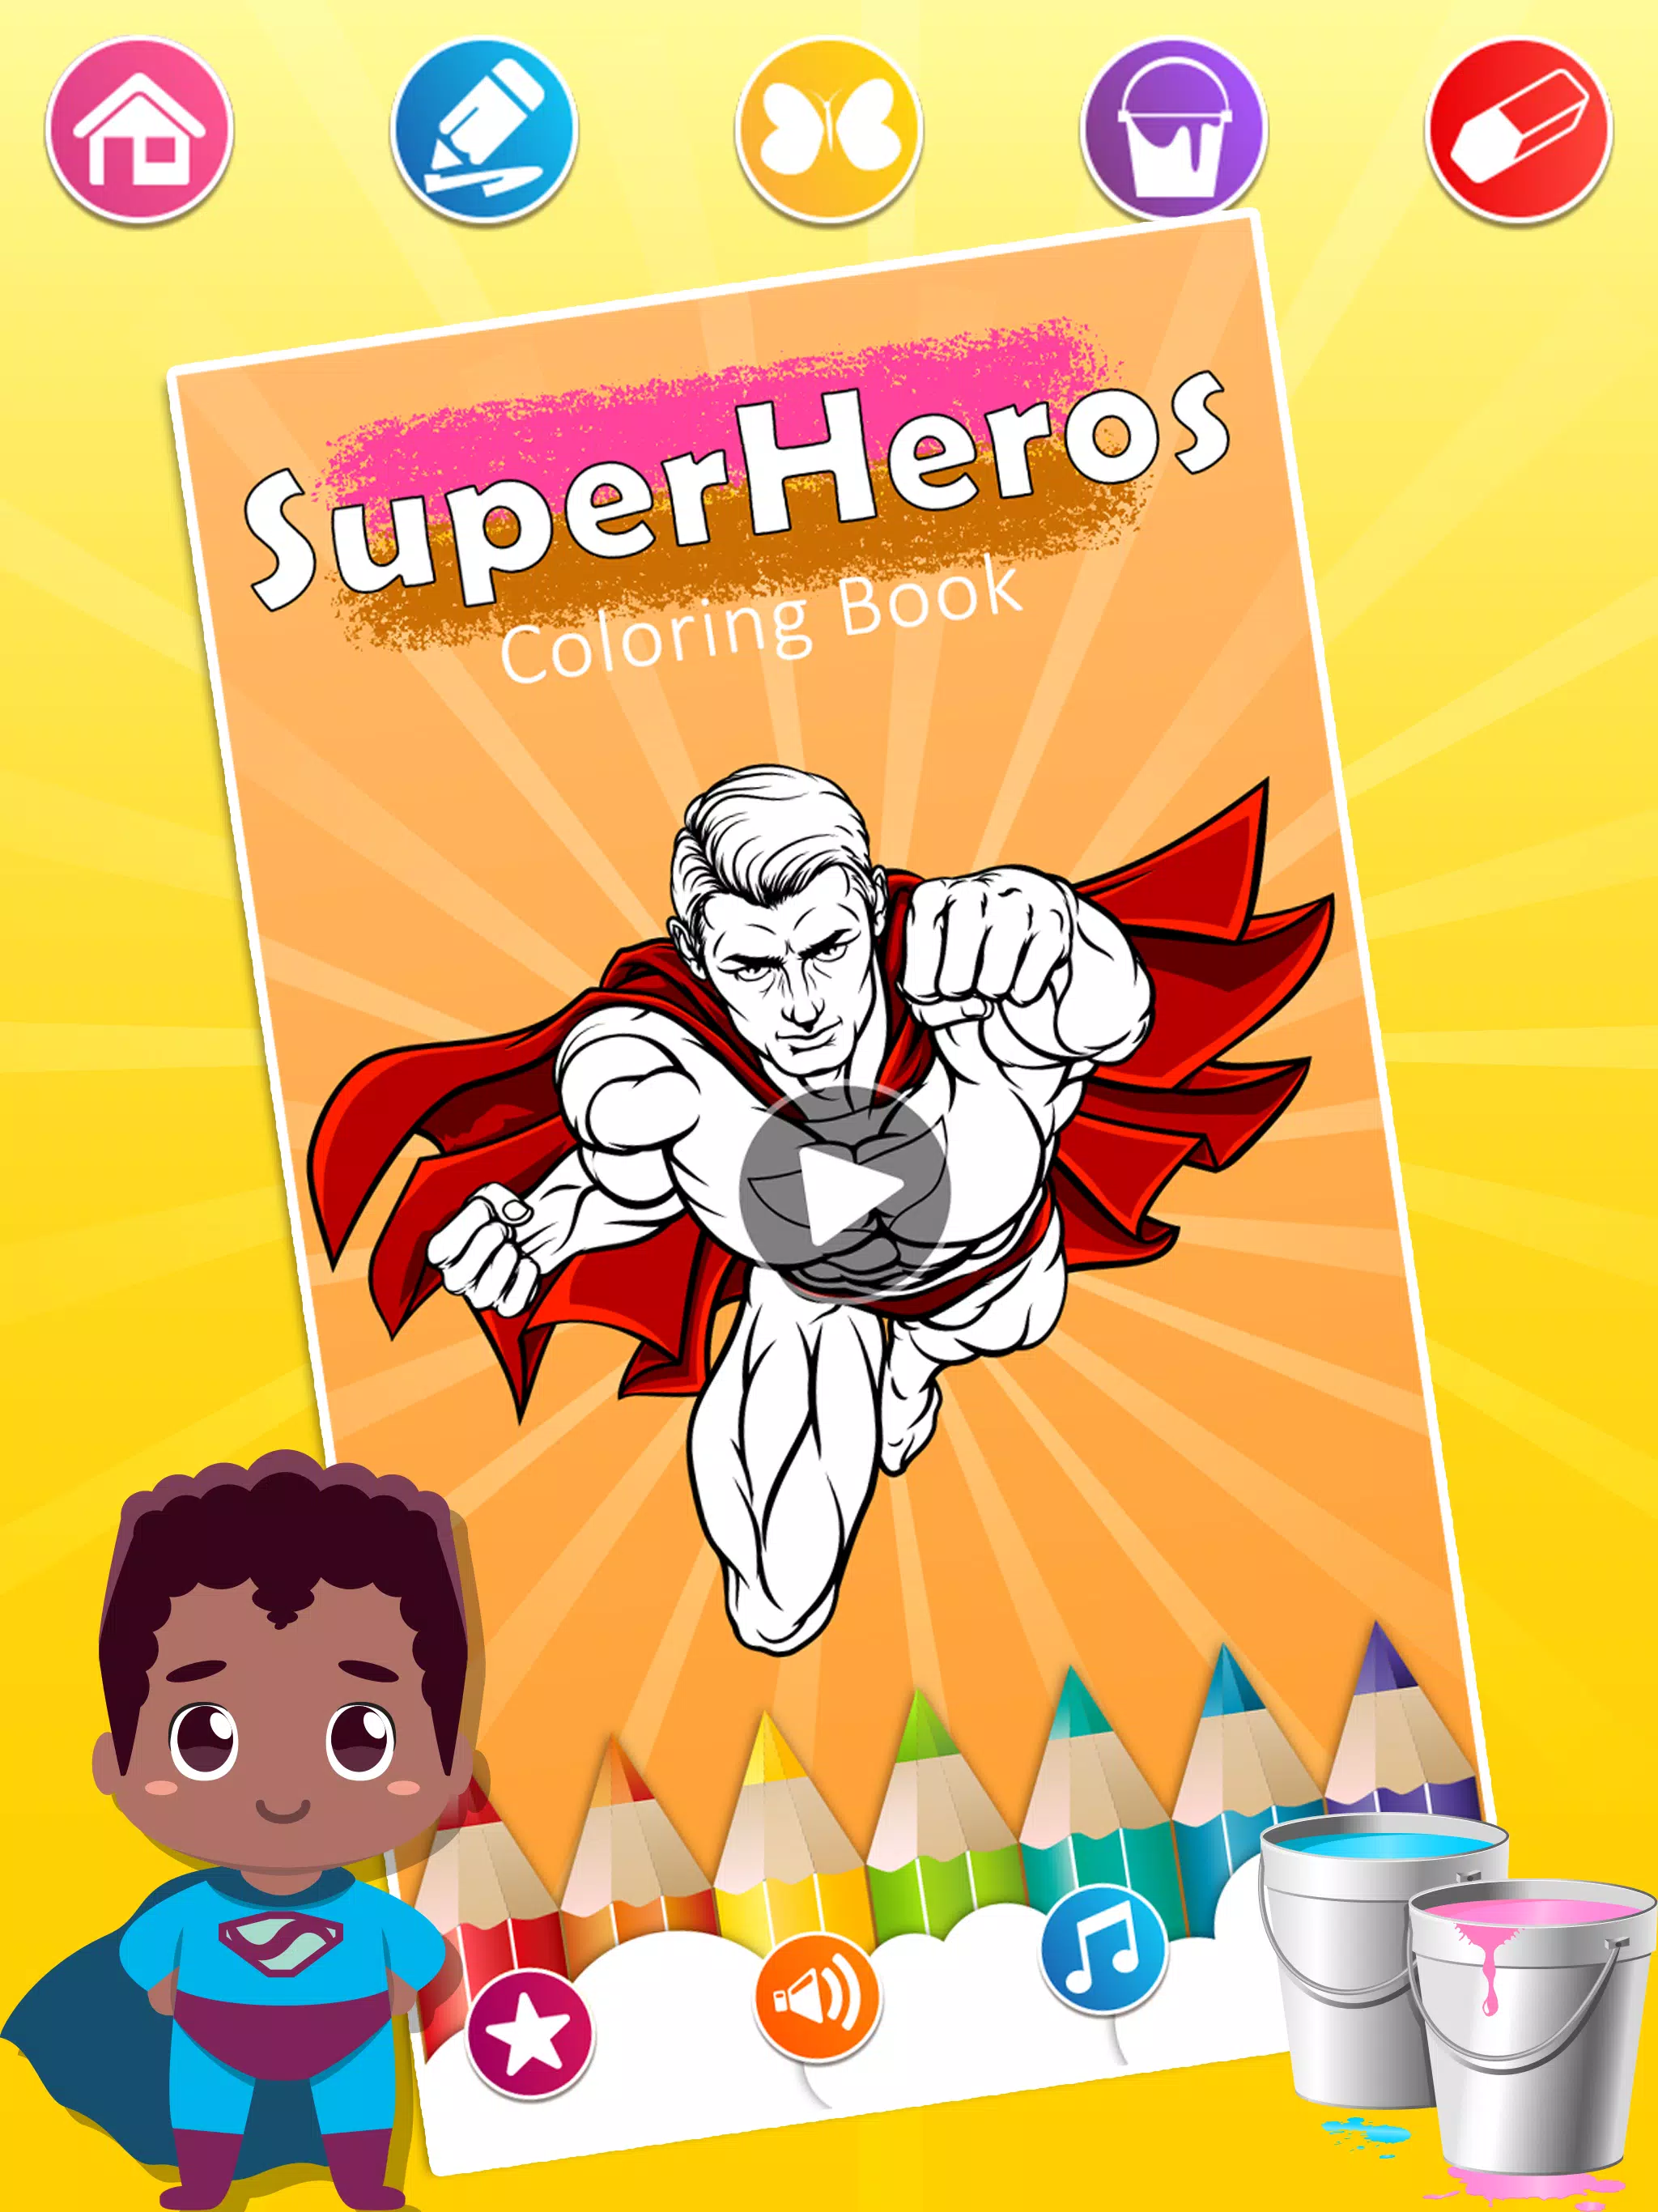 Download do APK de Super Heroi Desenhos - Jogos Para Colorir